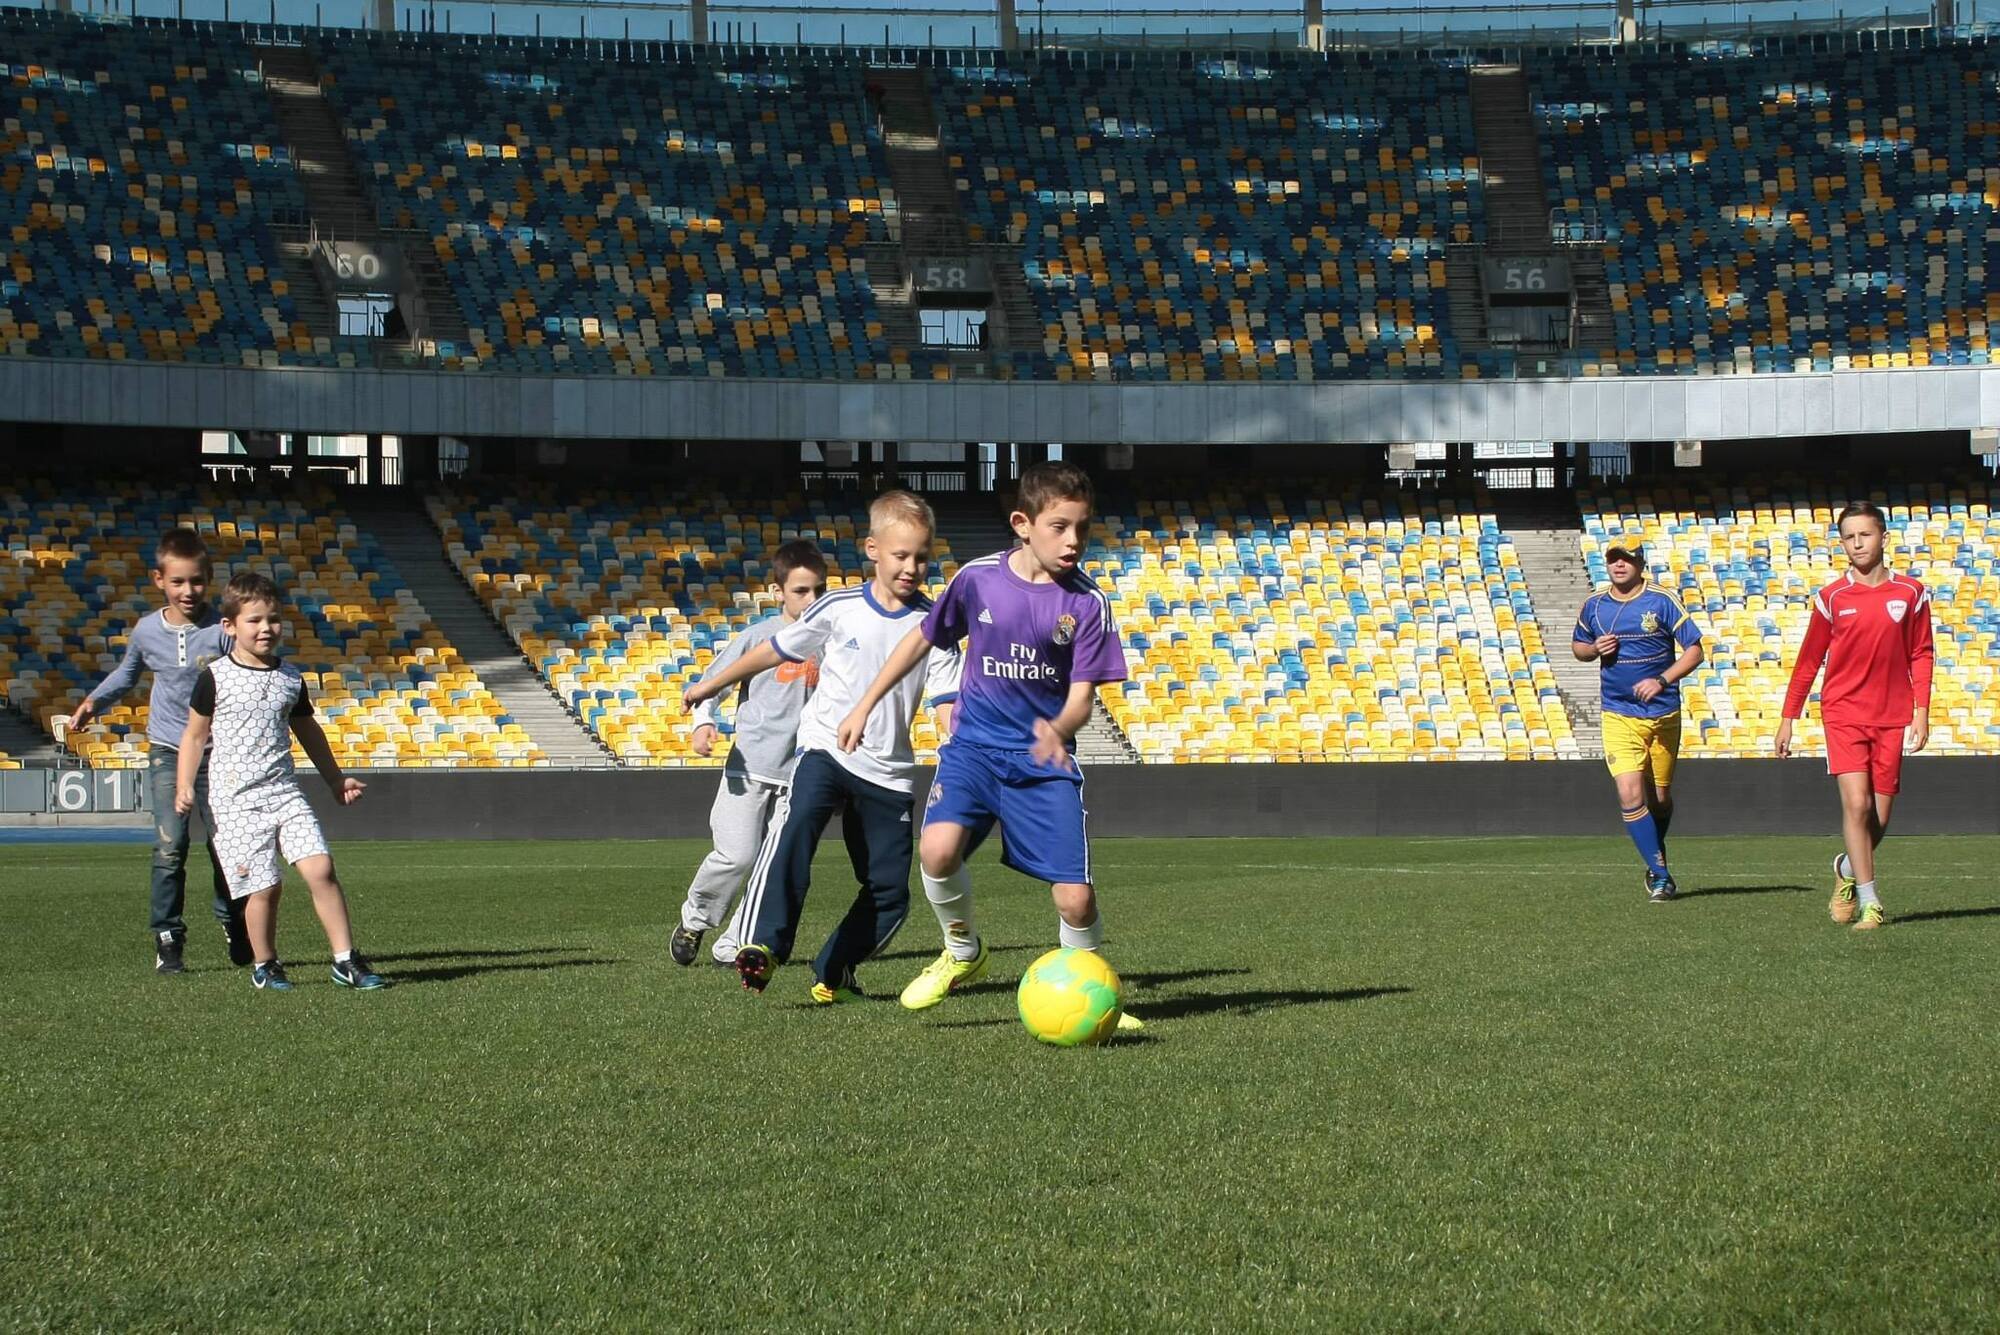 Миша Пикалов на игре по футболу.